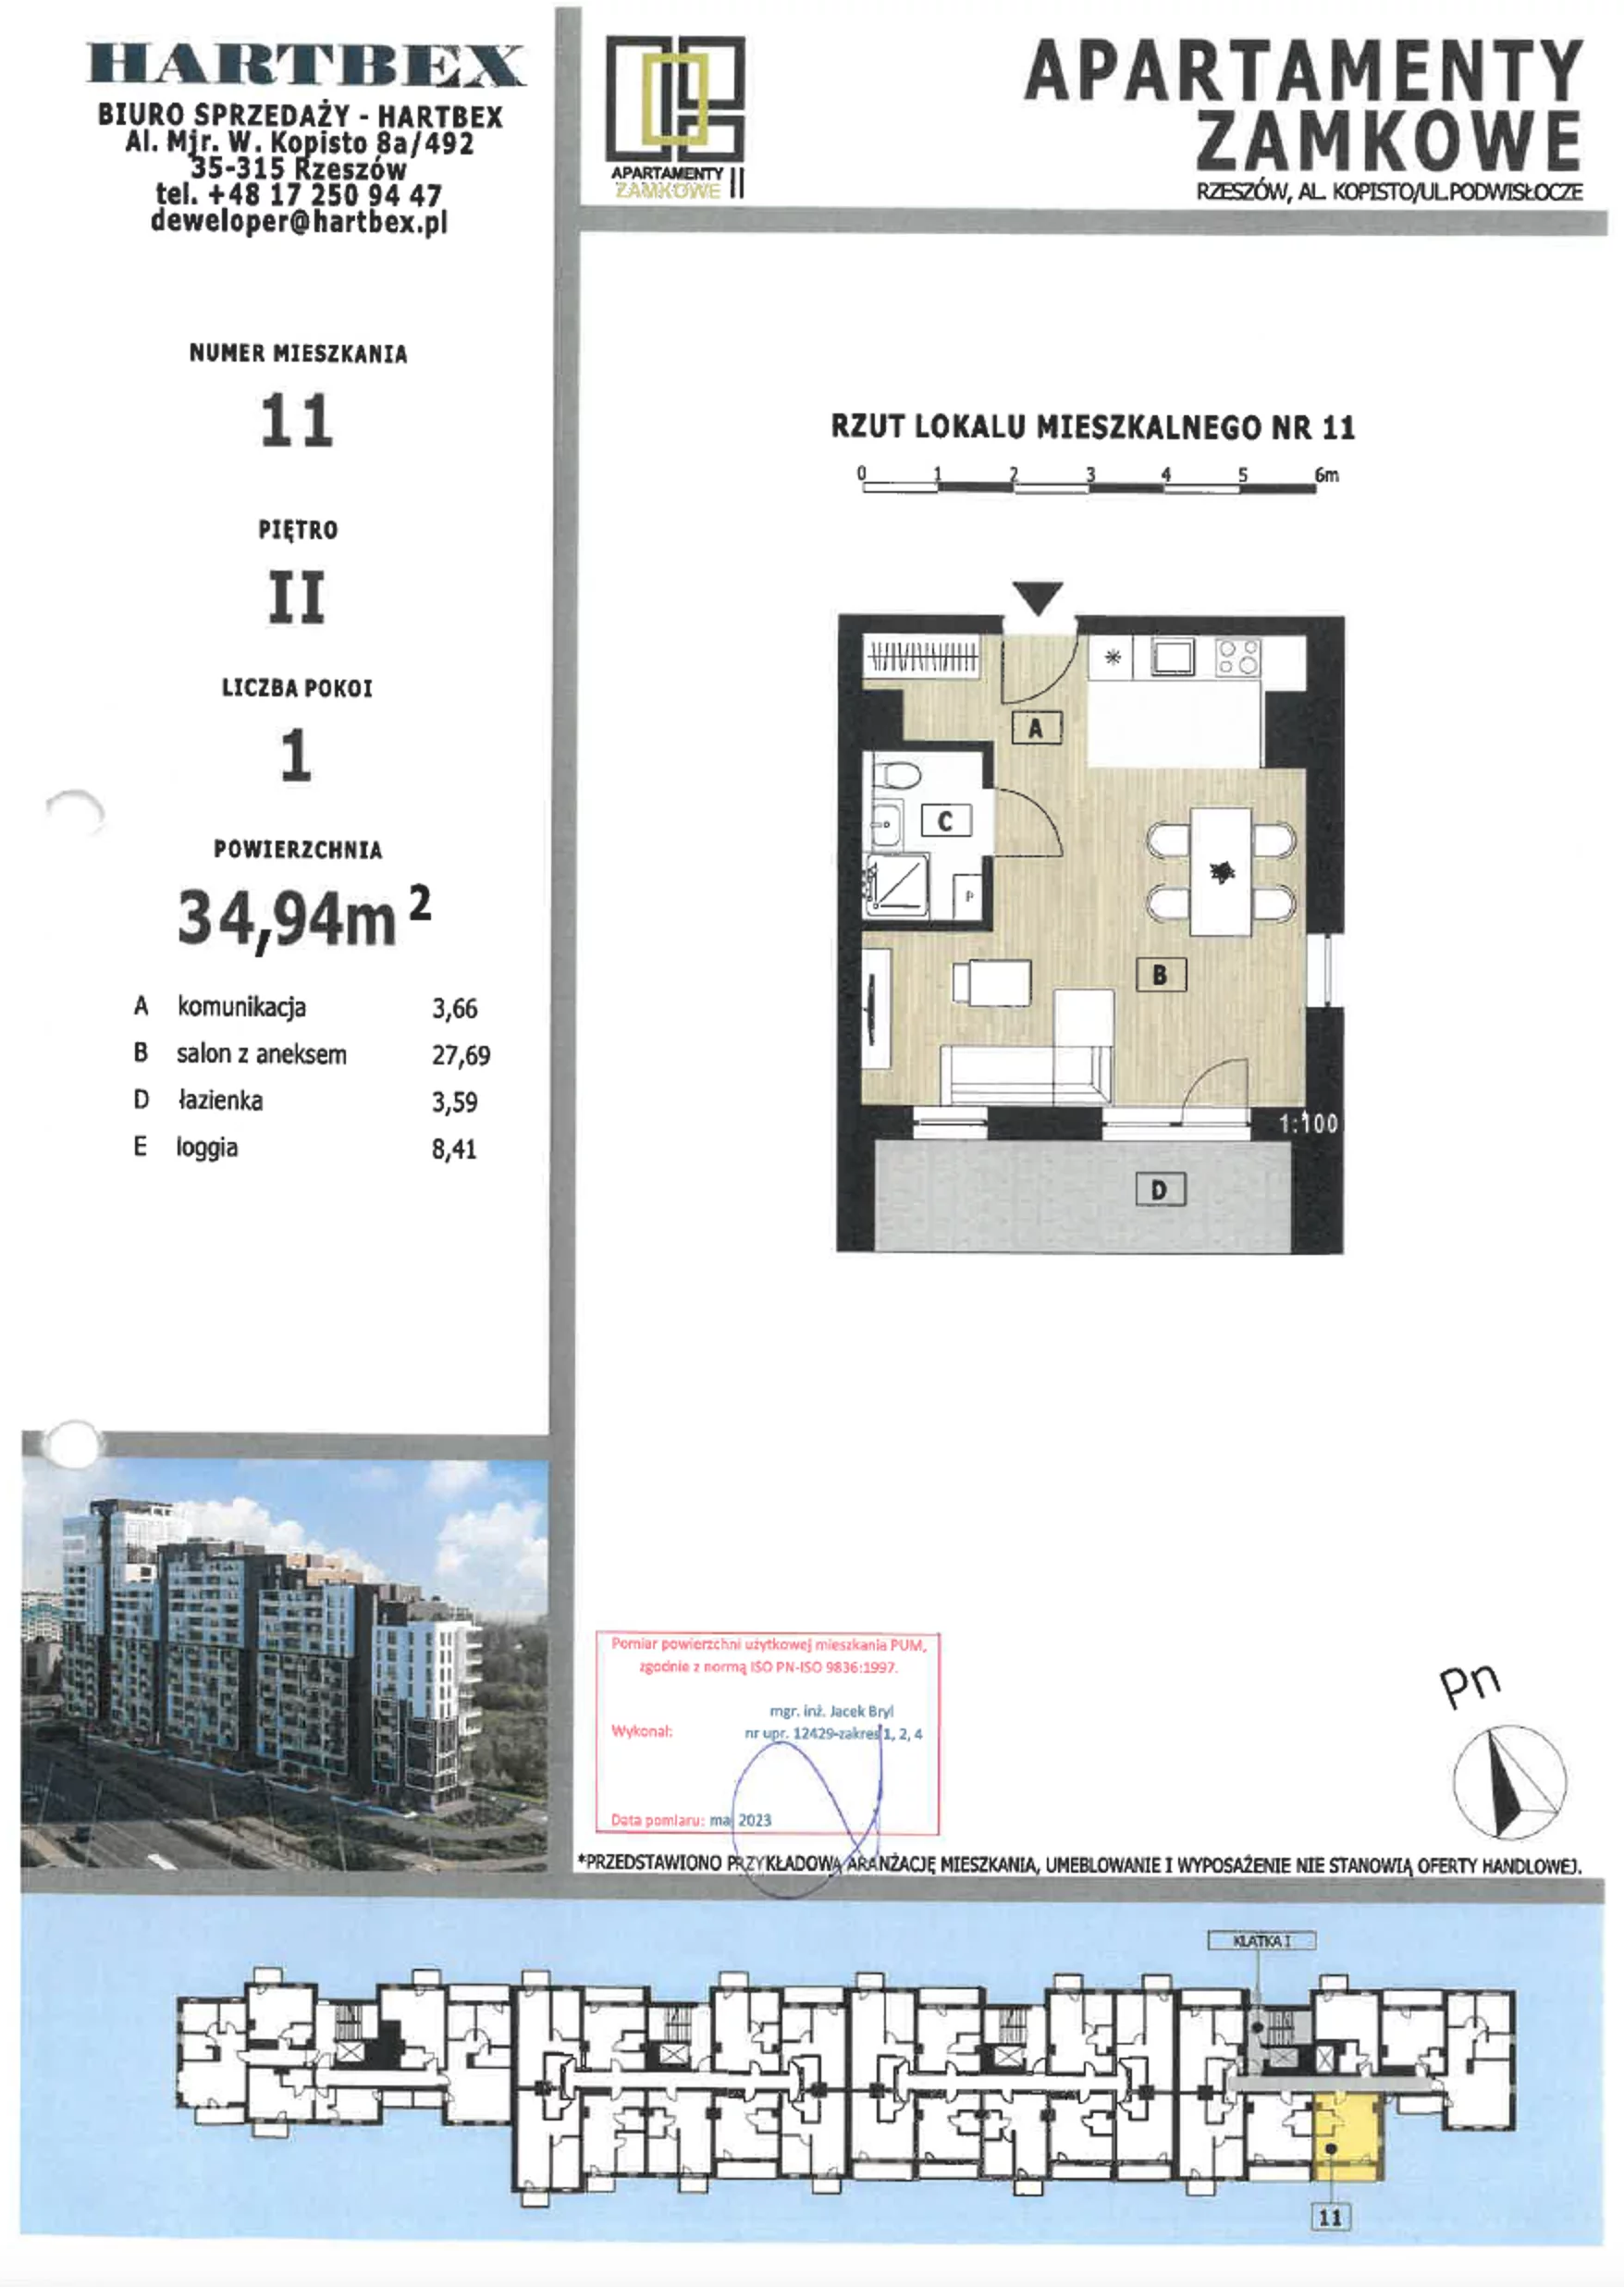 Mieszkanie 34,94 m², piętro 11, oferta nr 11, Apartamenty Zamkowe II, Rzeszów, Nowe Miasto, al. mjr W. Kopisto 11